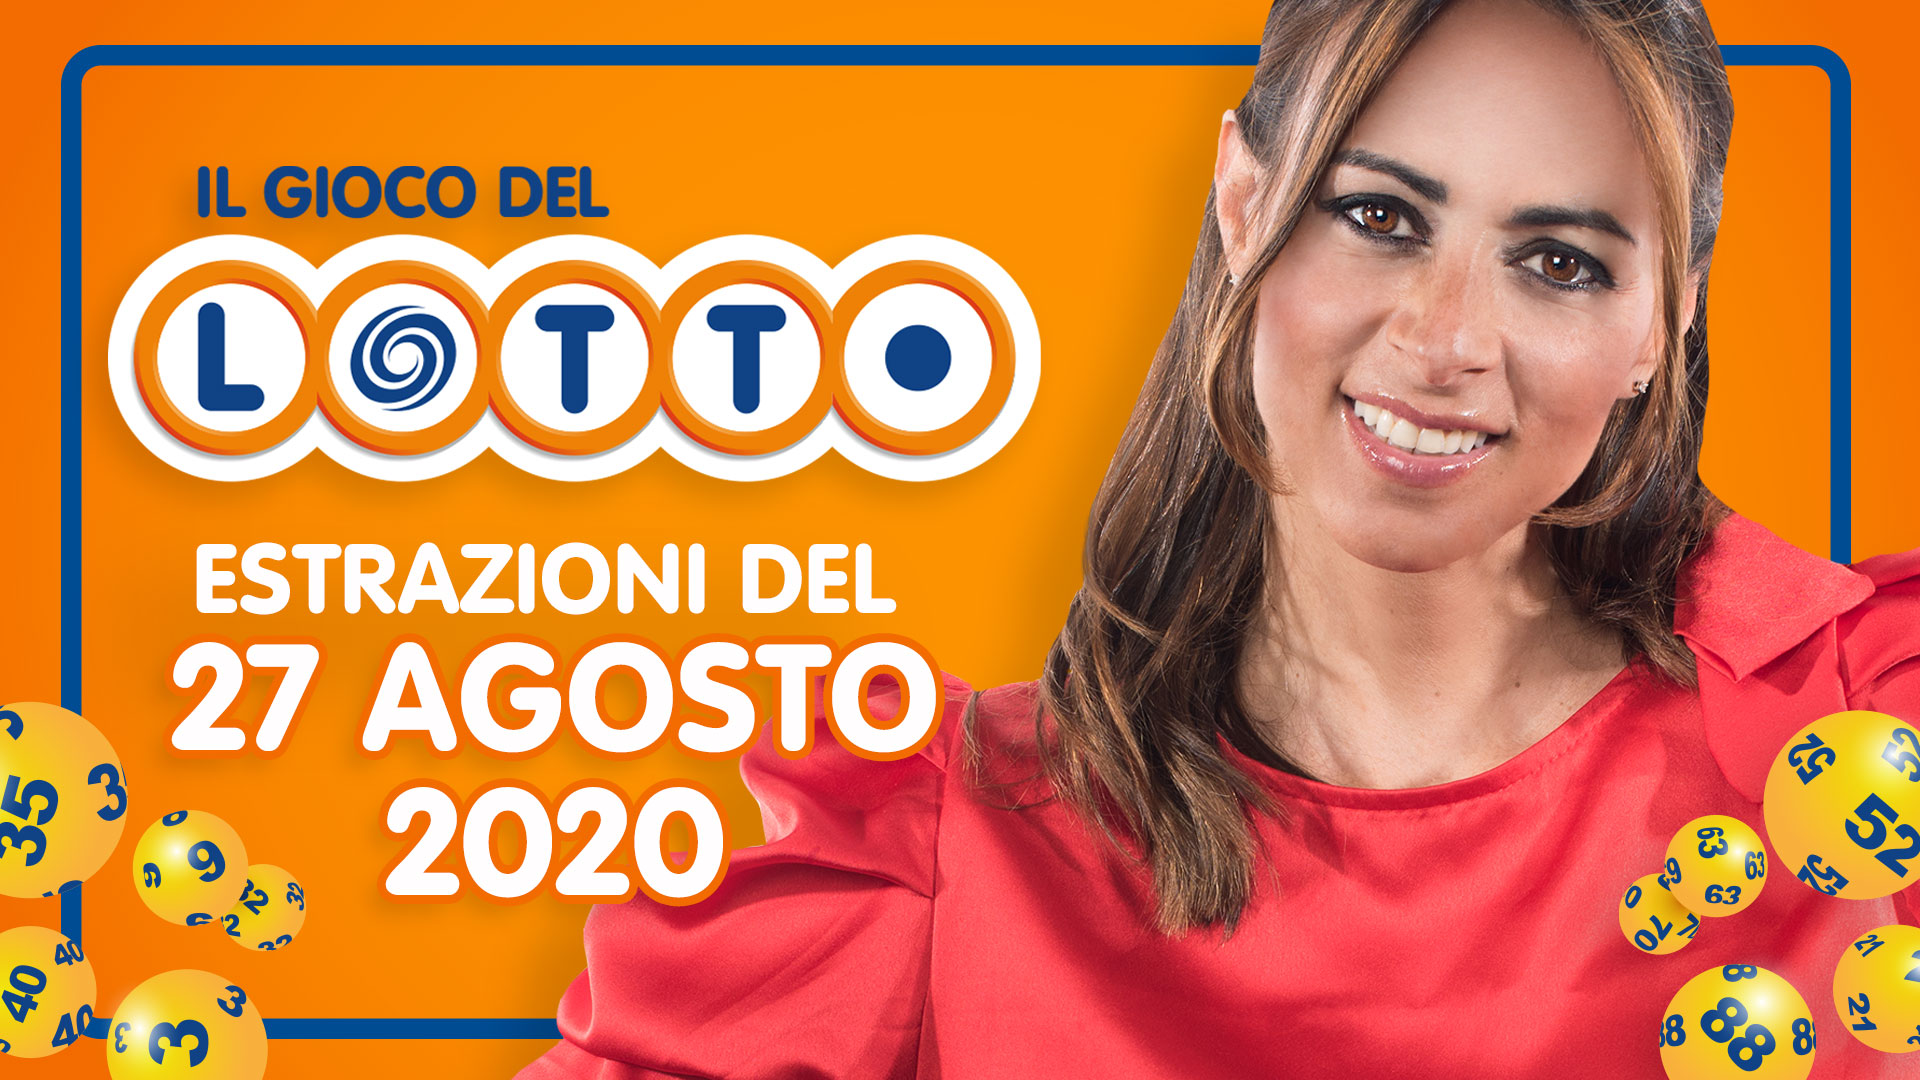 Estrazione lotto 27 agosto 2020 estrazione del lotto in diretta oggi giovedì SuperEnalotto 10 e lotto ogni 5 minuti Simbolotto MillionDay conduce Serena Garitta